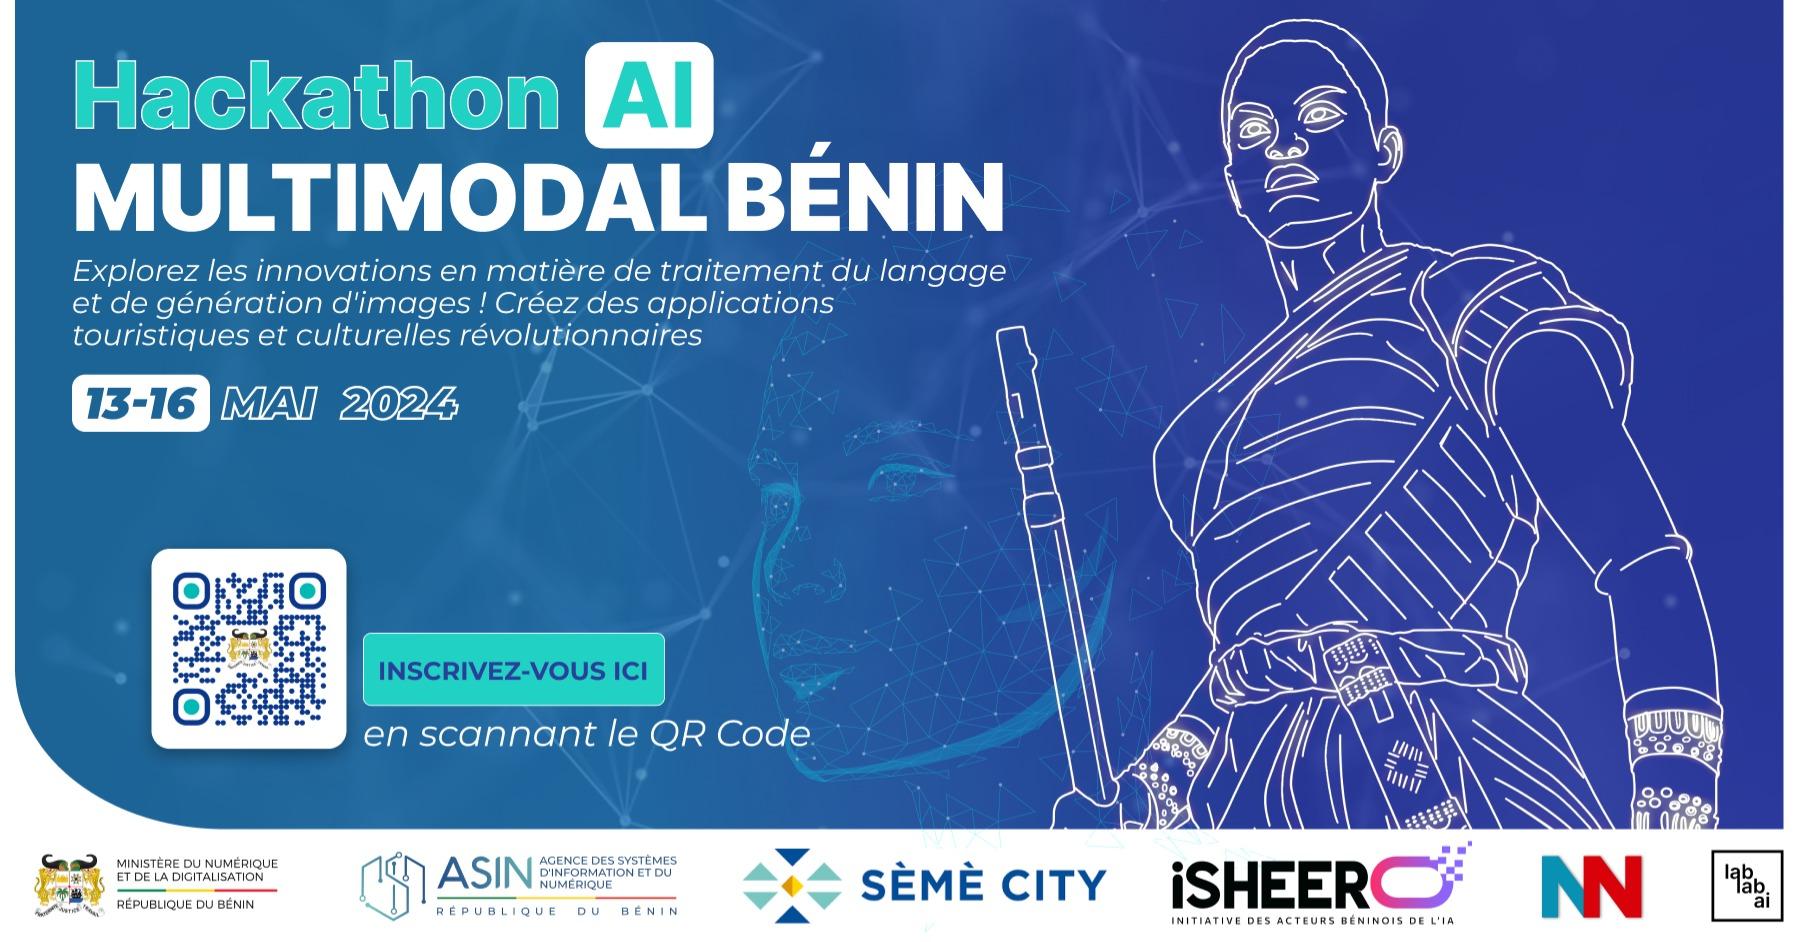 Benin Multimodal AI Hackathon image